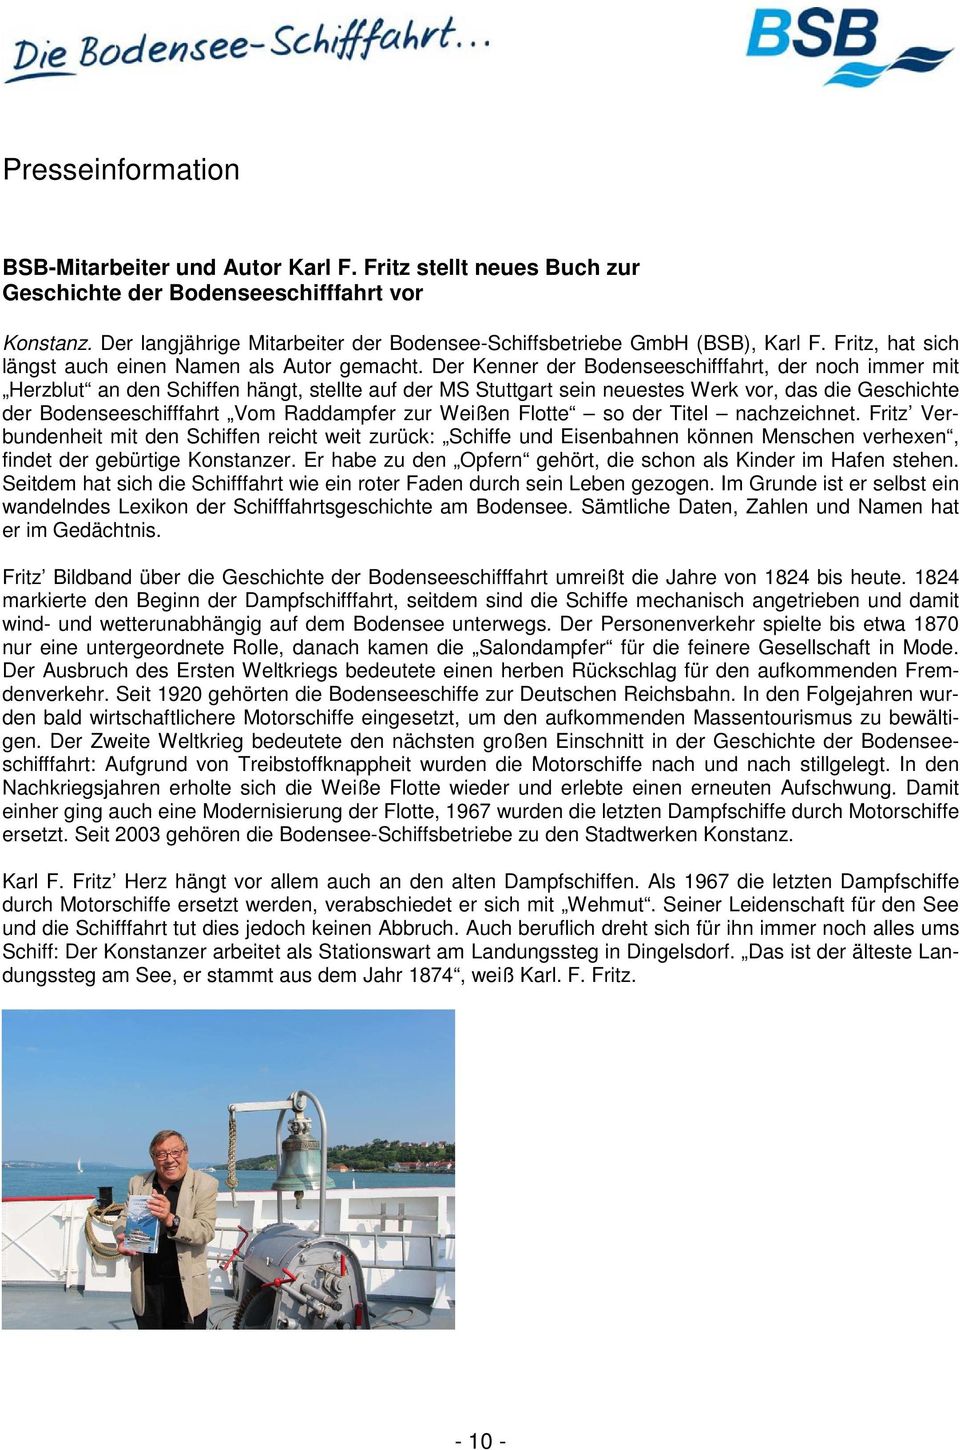 Der Kenner der Bodenseeschifffahrt, der noch immer mit Herzblut an den Schiffen hängt, stellte auf der MS Stuttgart sein neuestes Werk vor, das die Geschichte der Bodenseeschifffahrt Vom Raddampfer